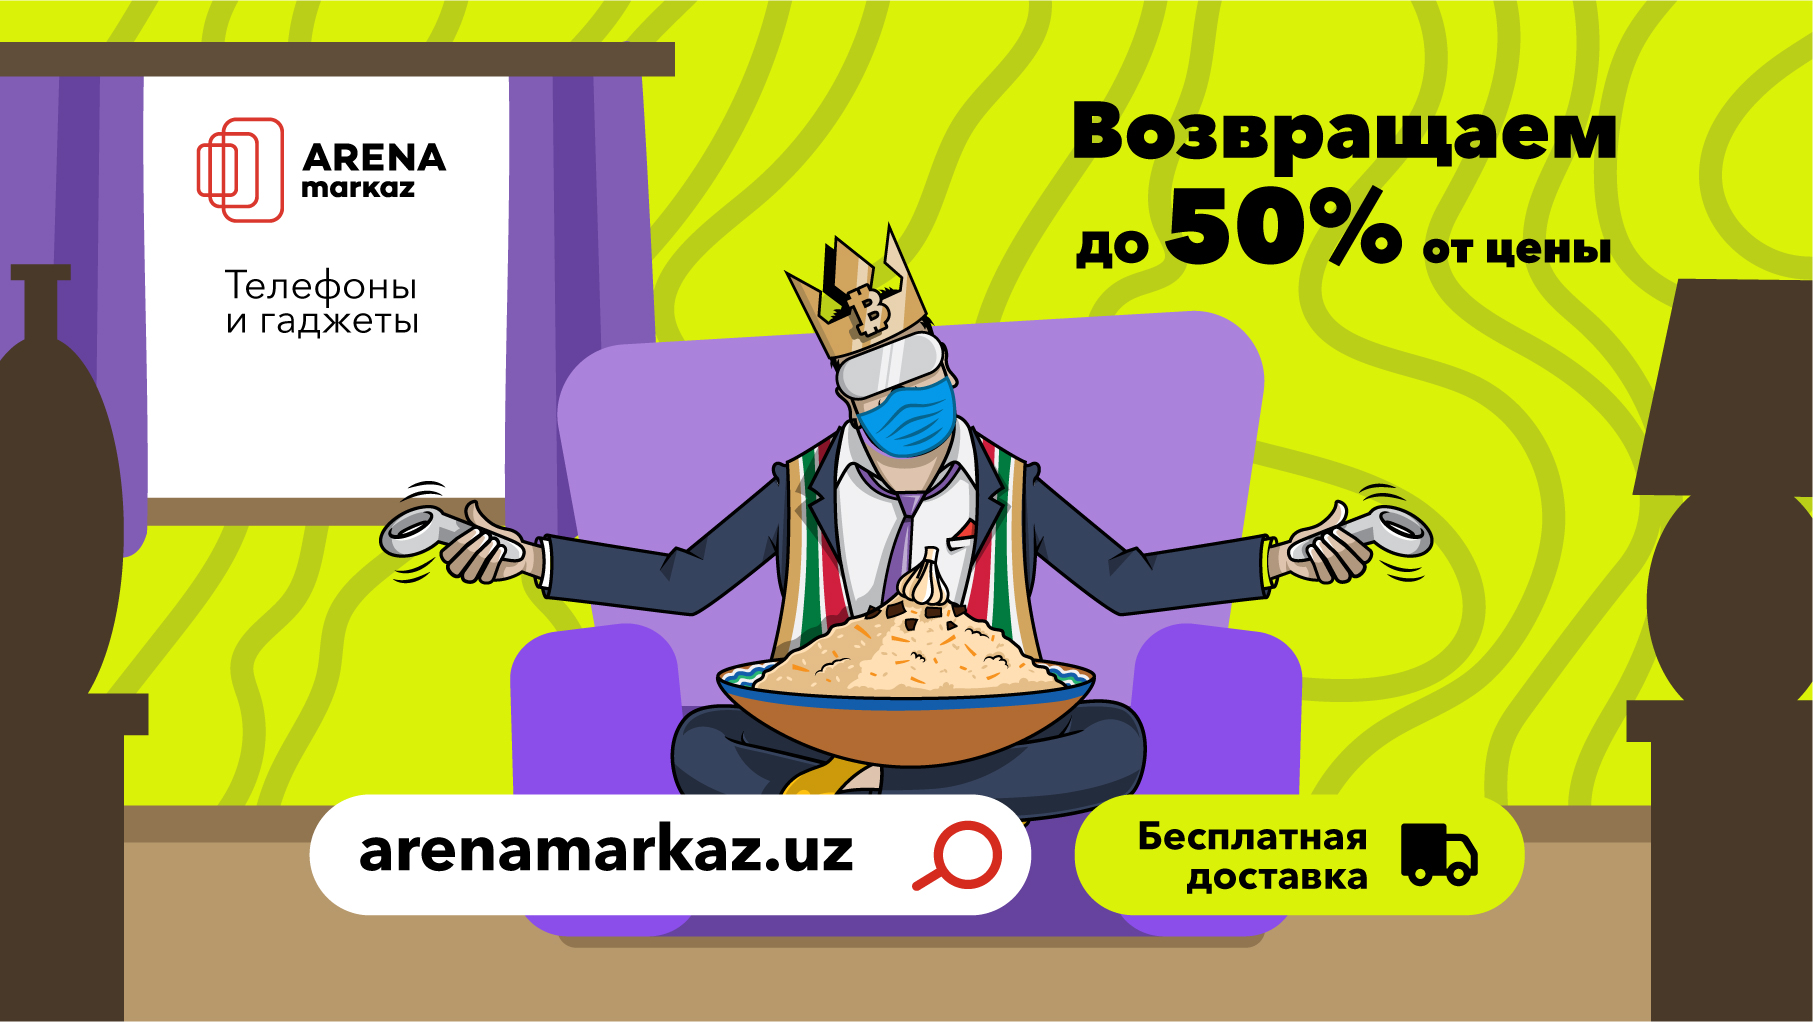 Arena Markaz повышает cashback до 50% с бесплатной доставкой прямо домой